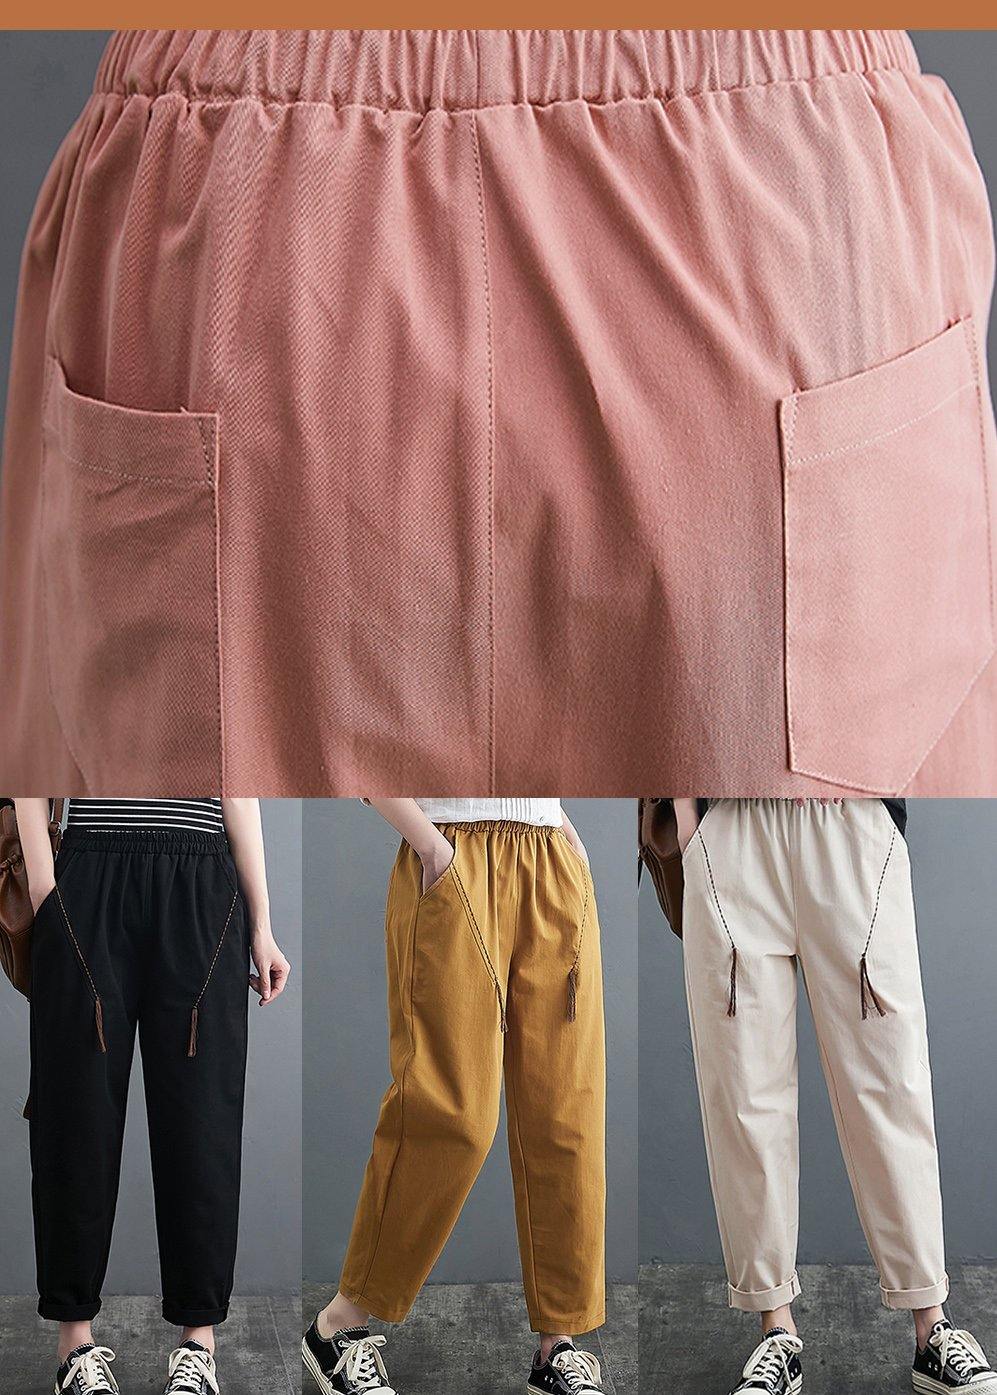 Handmade Spring Shorts Plus Size Clothing Beige Inspiration Pockets Pants - Omychic